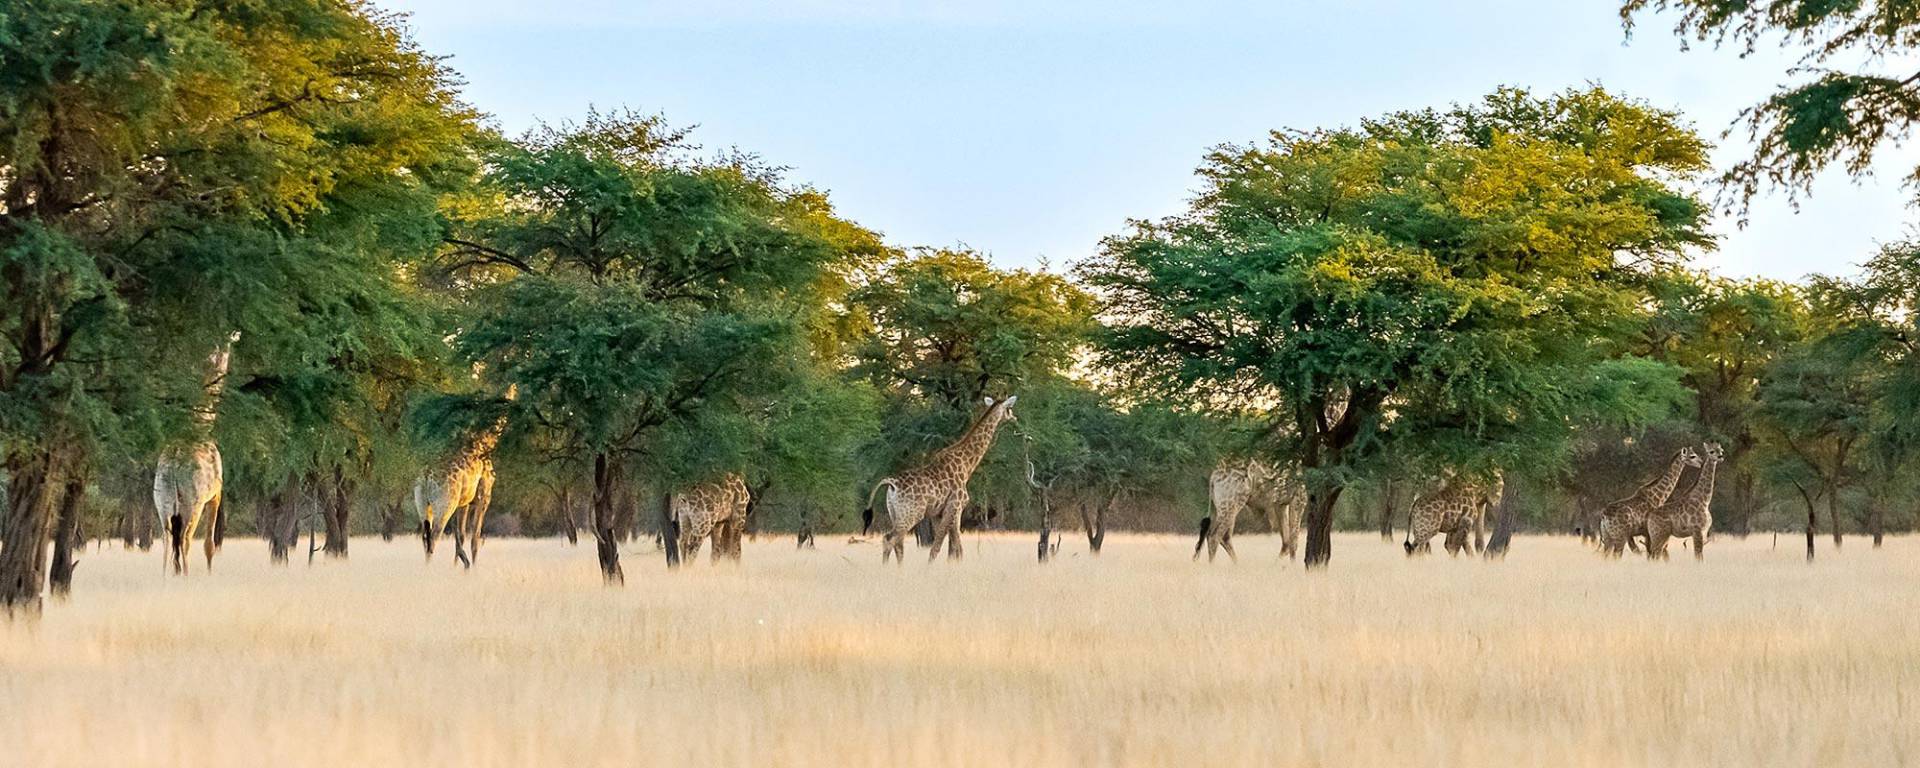 Giraffes at a Camelthorn forest at Kuzikus